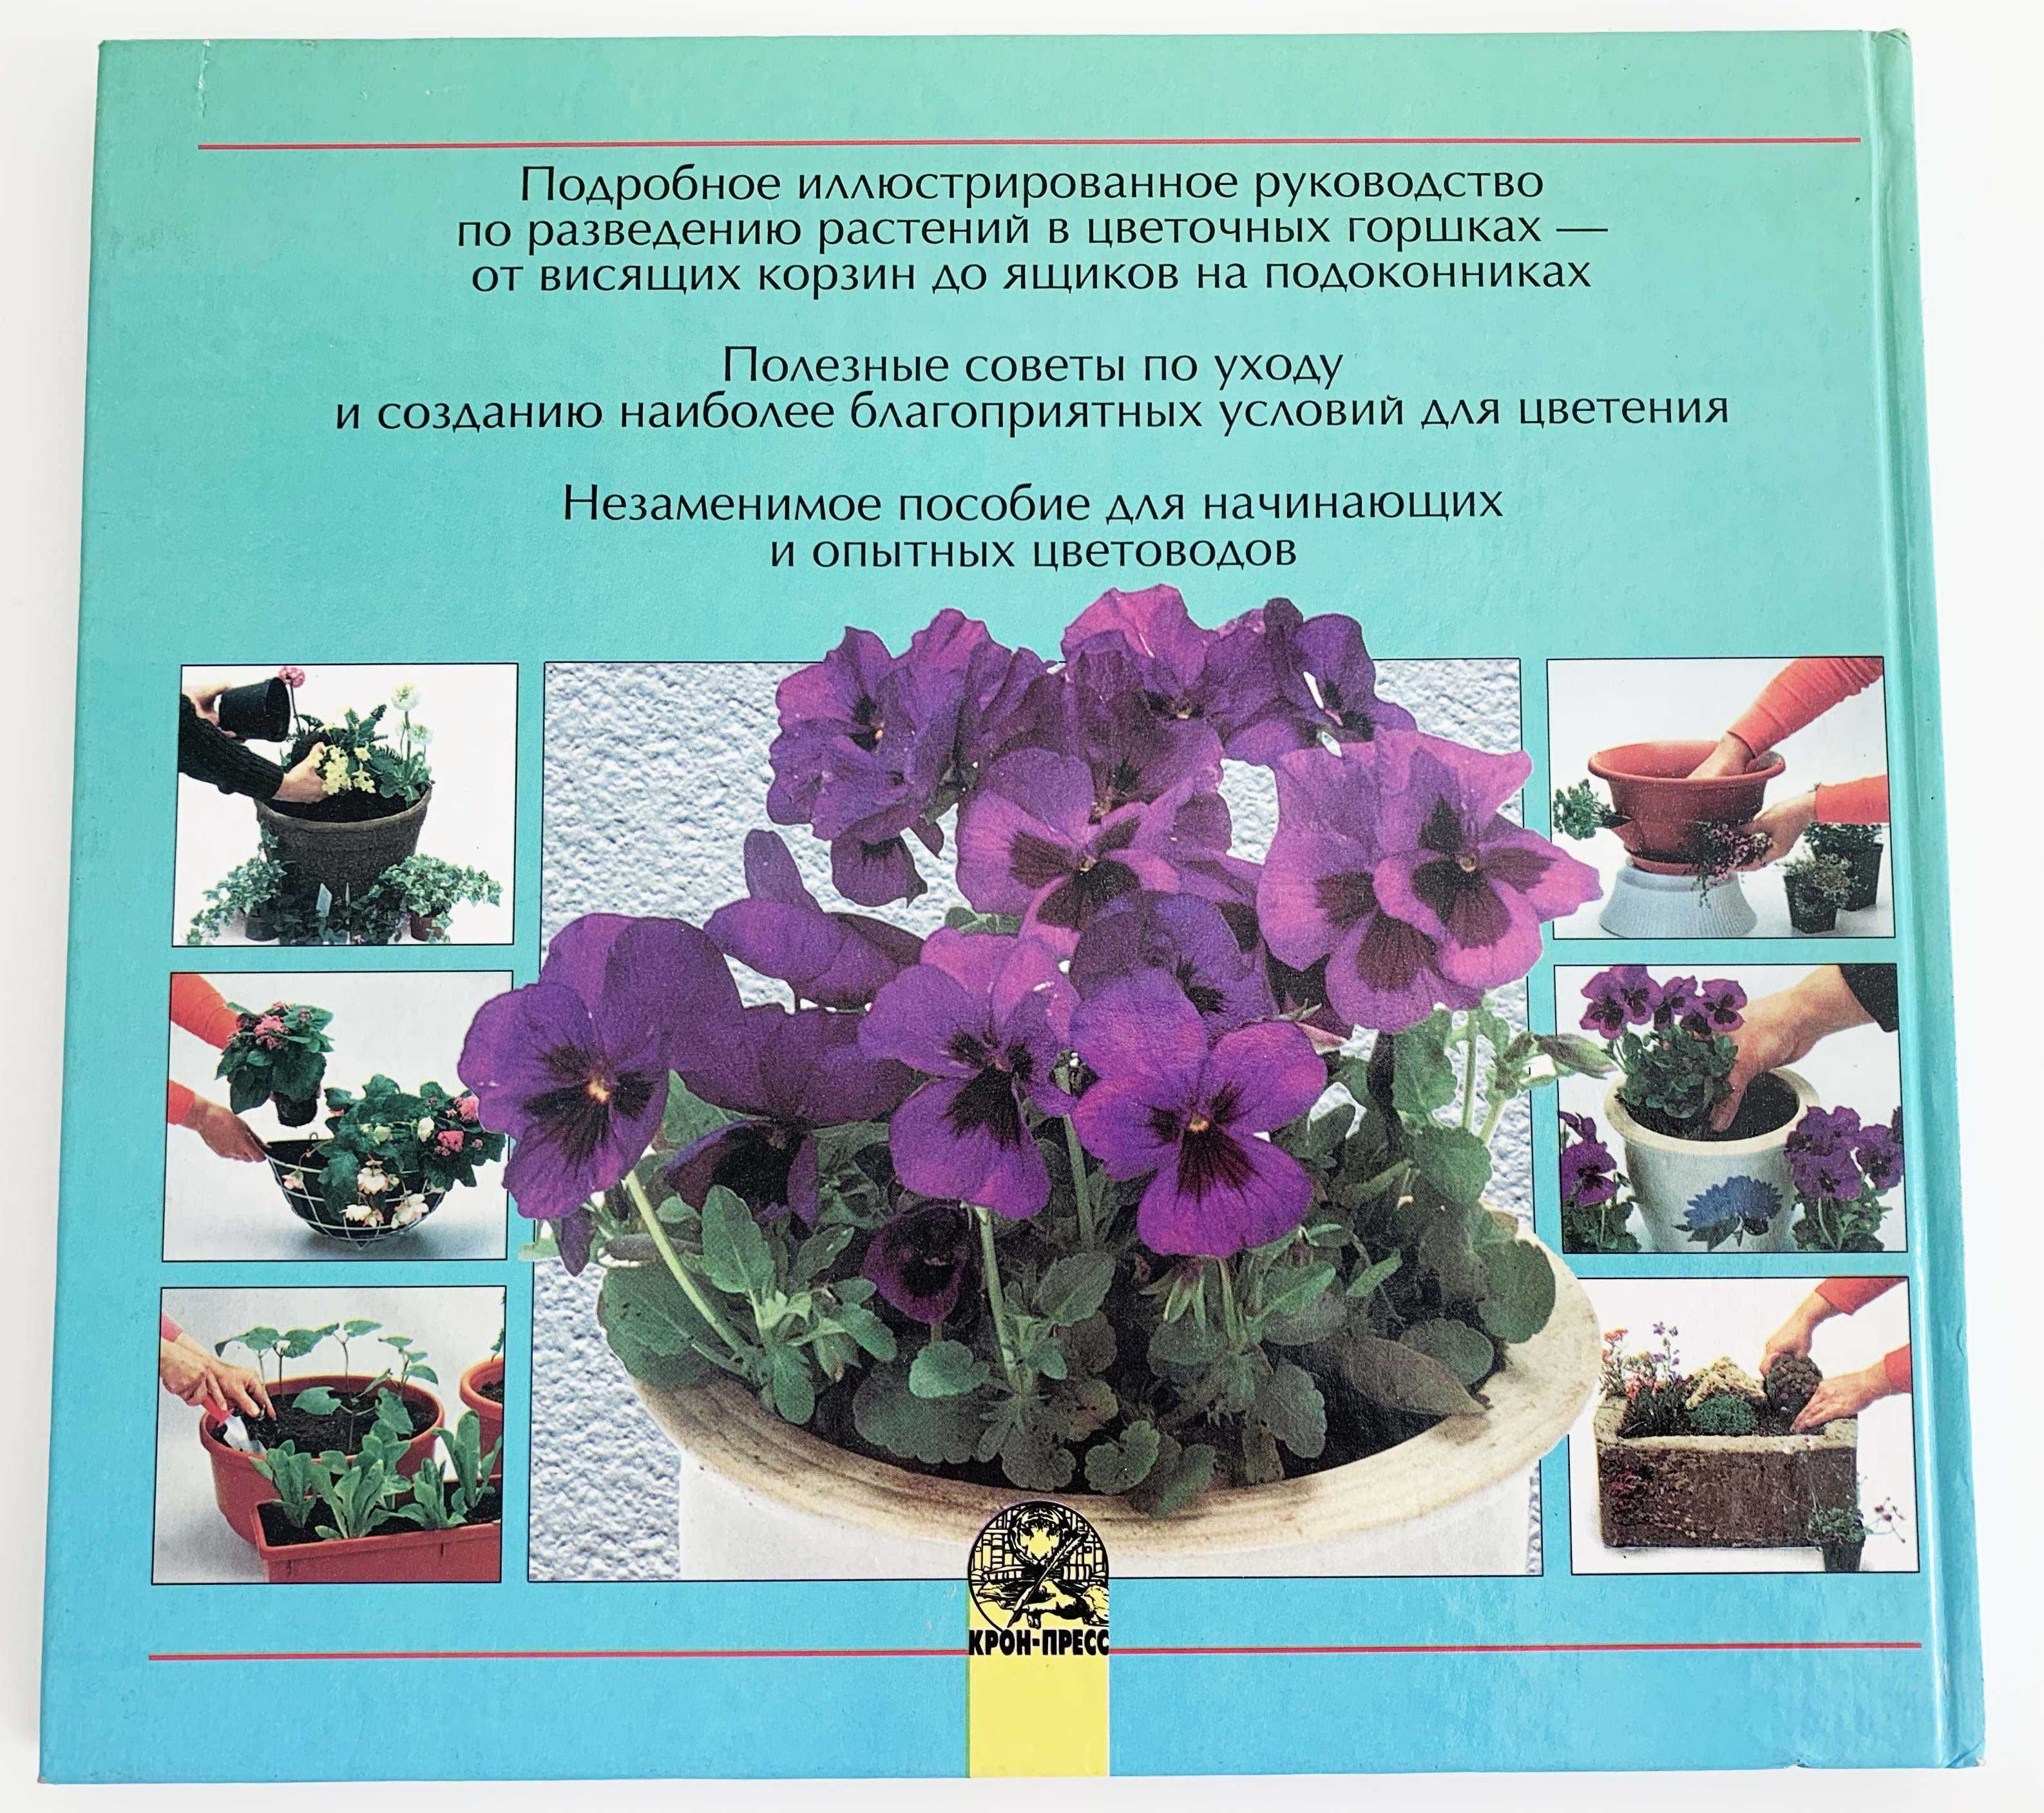 Выращивание растений в цветочных горшках, Сью Филлипс